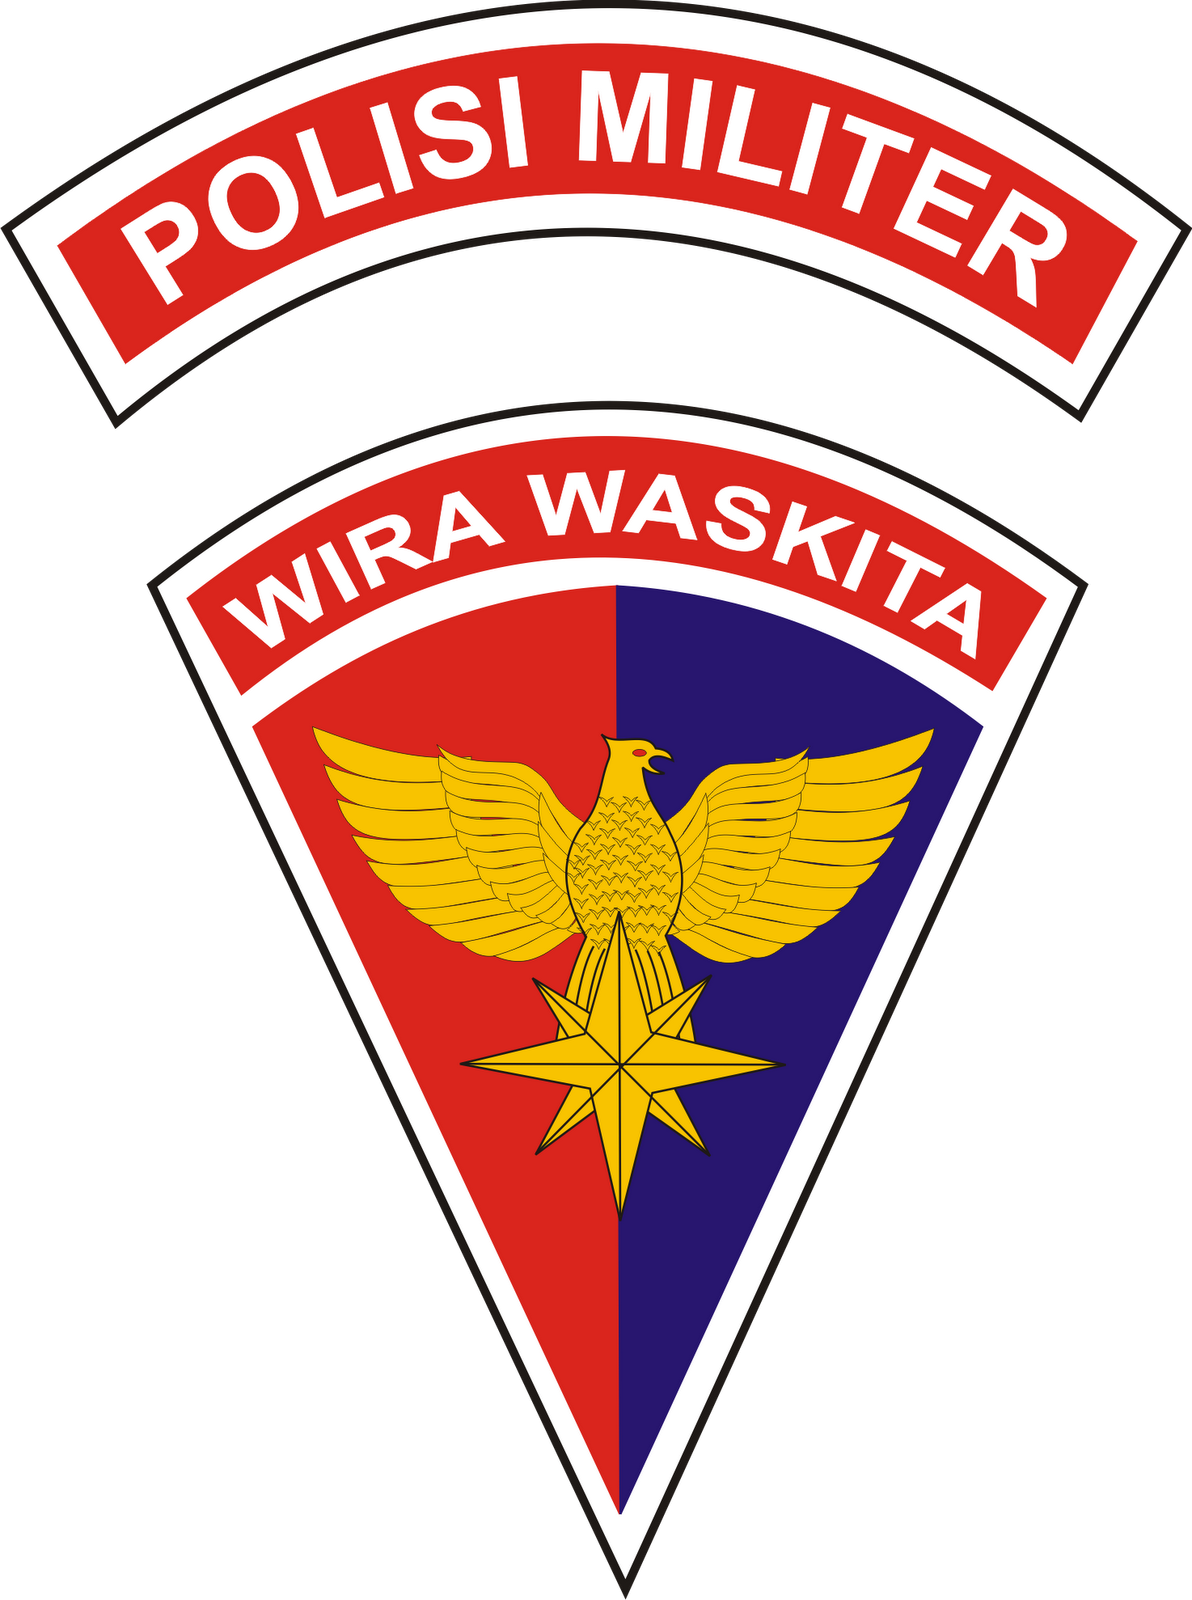  Logo Polisi Militer Angkatan Laut POMAL dan Polisi 